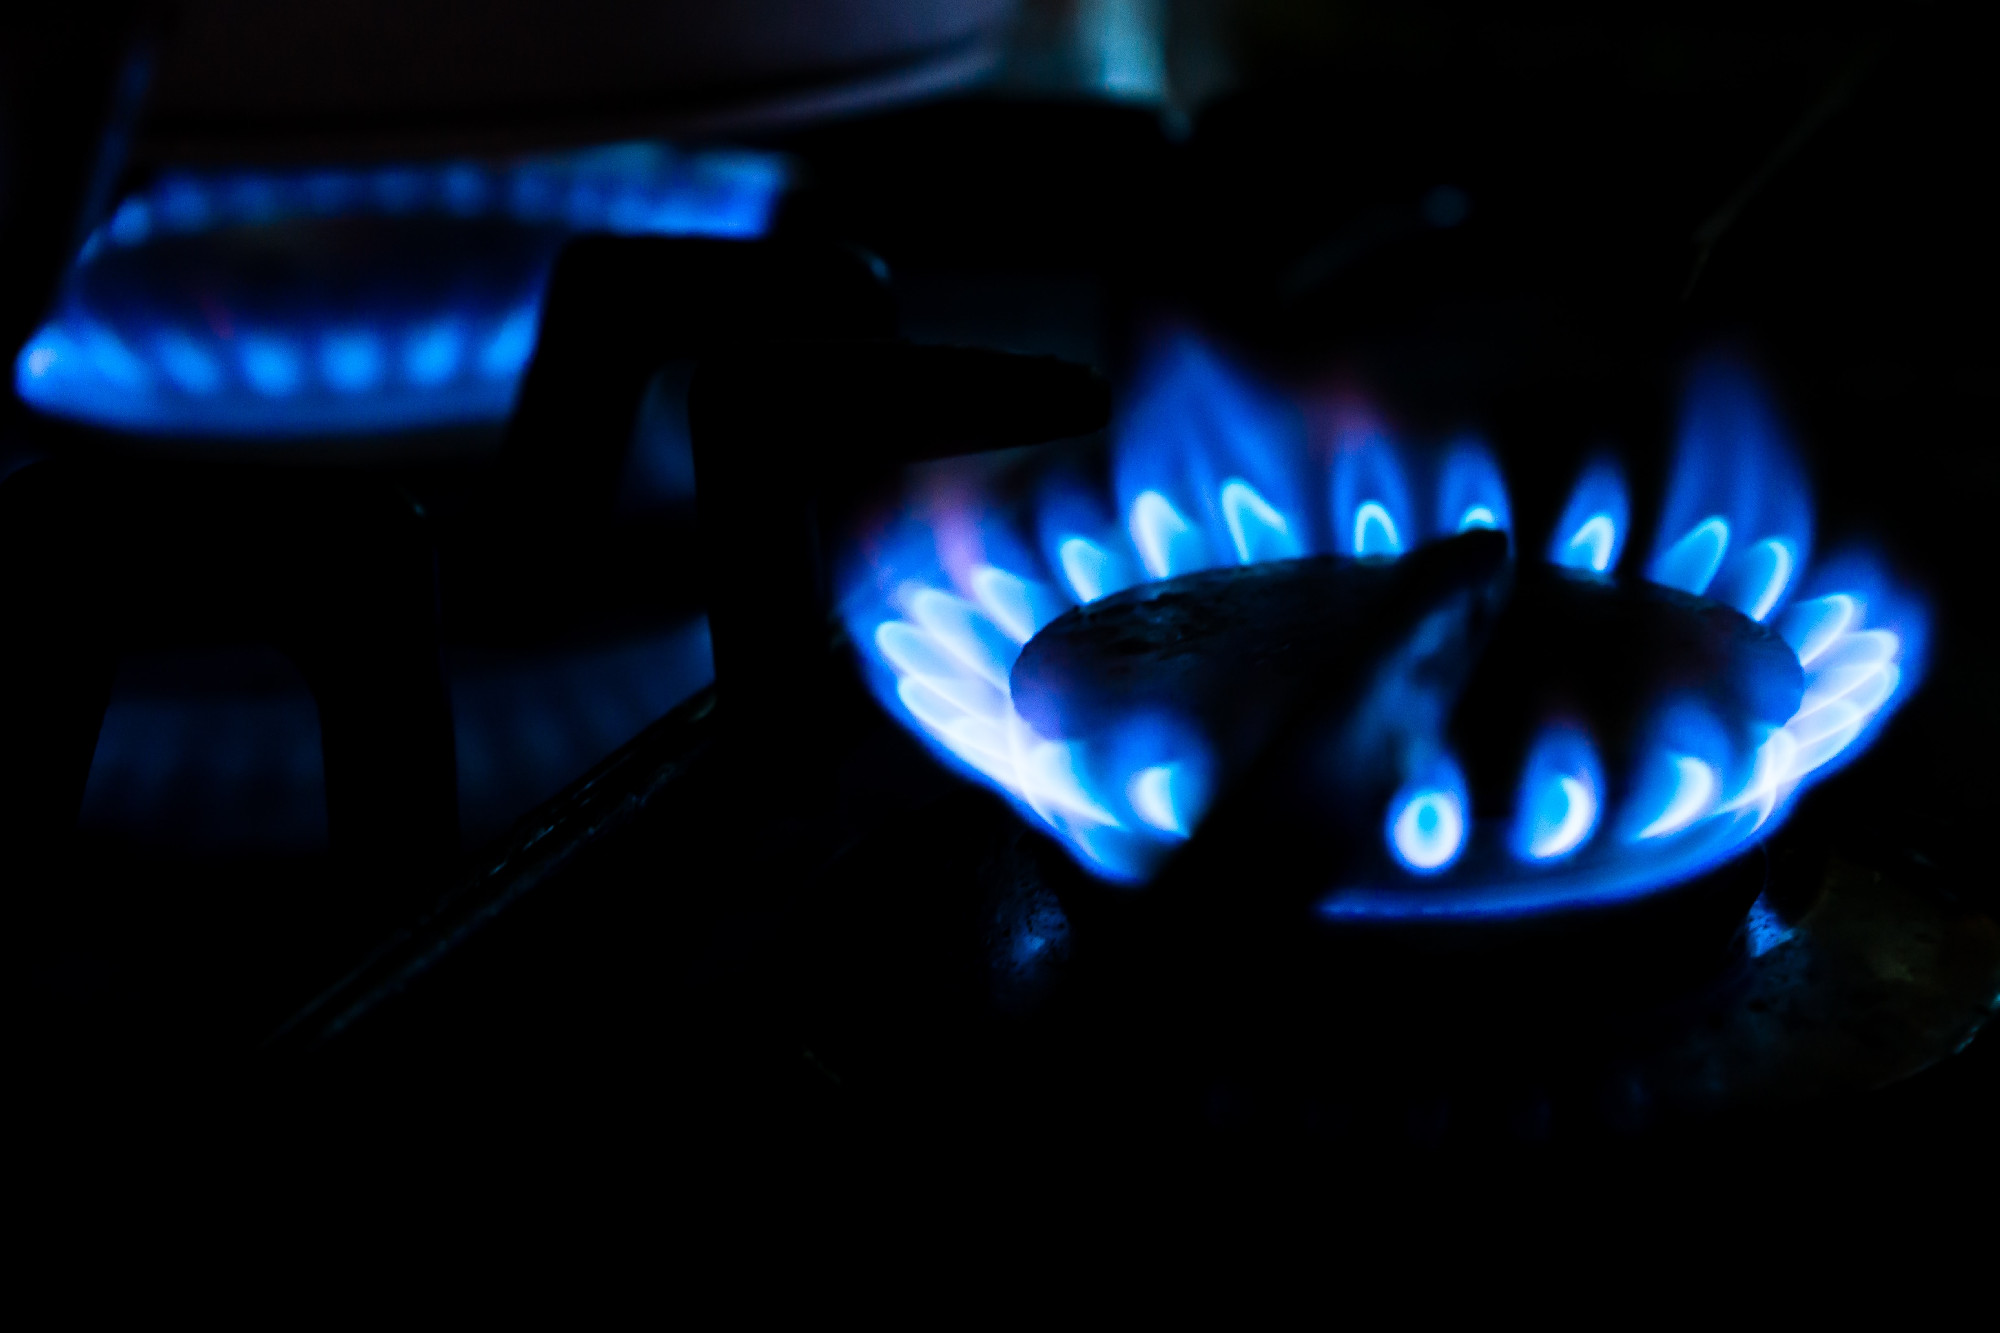 Októbertől még drágább lesz a gáz, mint ahogy eddig a kormány mondta